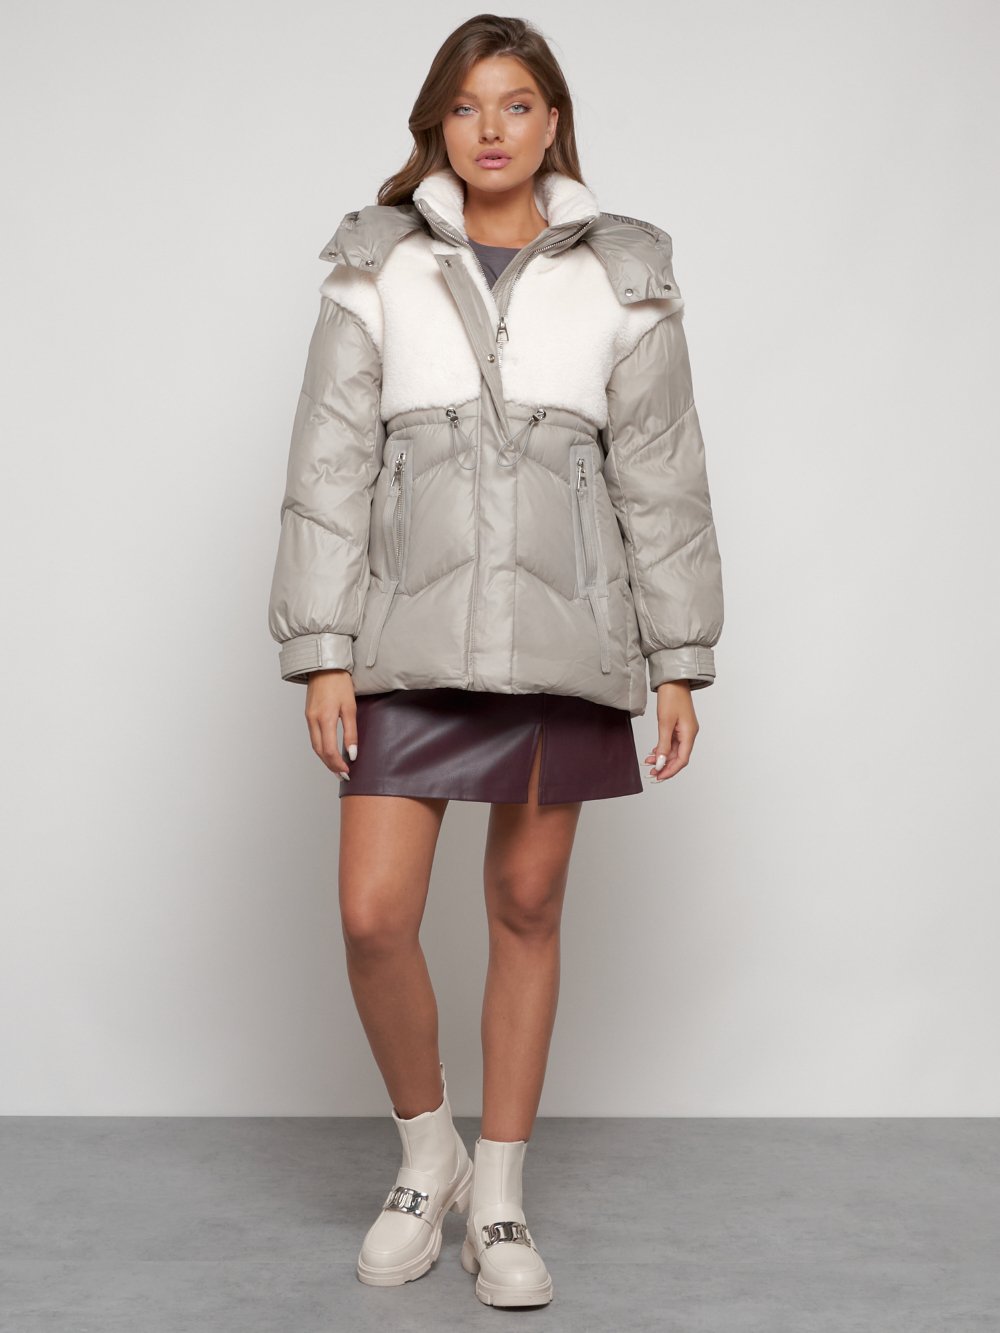 Купить куртку женскую зимнюю оптом от производителя недорого в Москве 13350SK